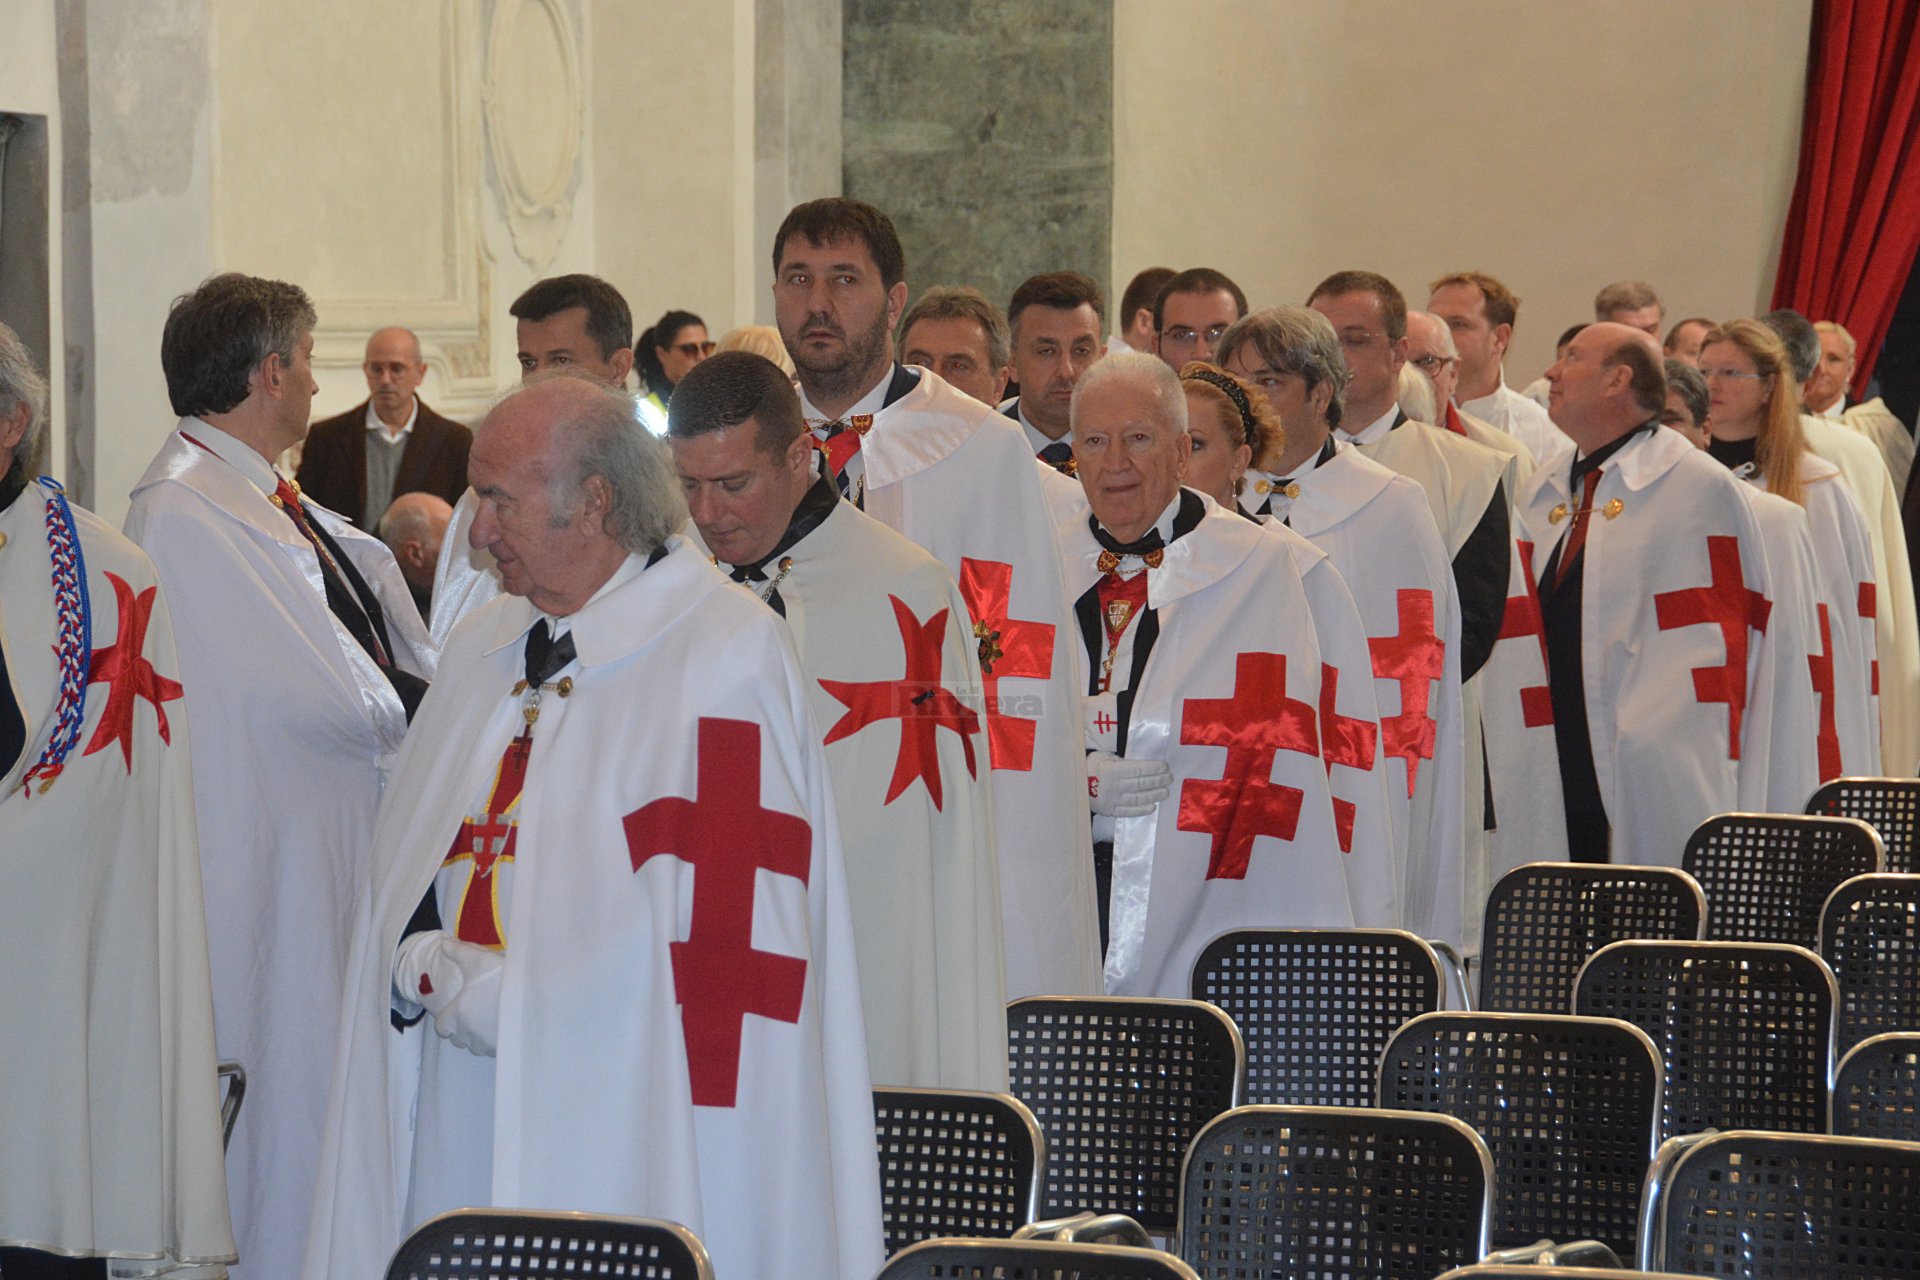 Cavalieri Templari ex chiesa San Francesco Ventimiglia 1 dicembre 2018_06